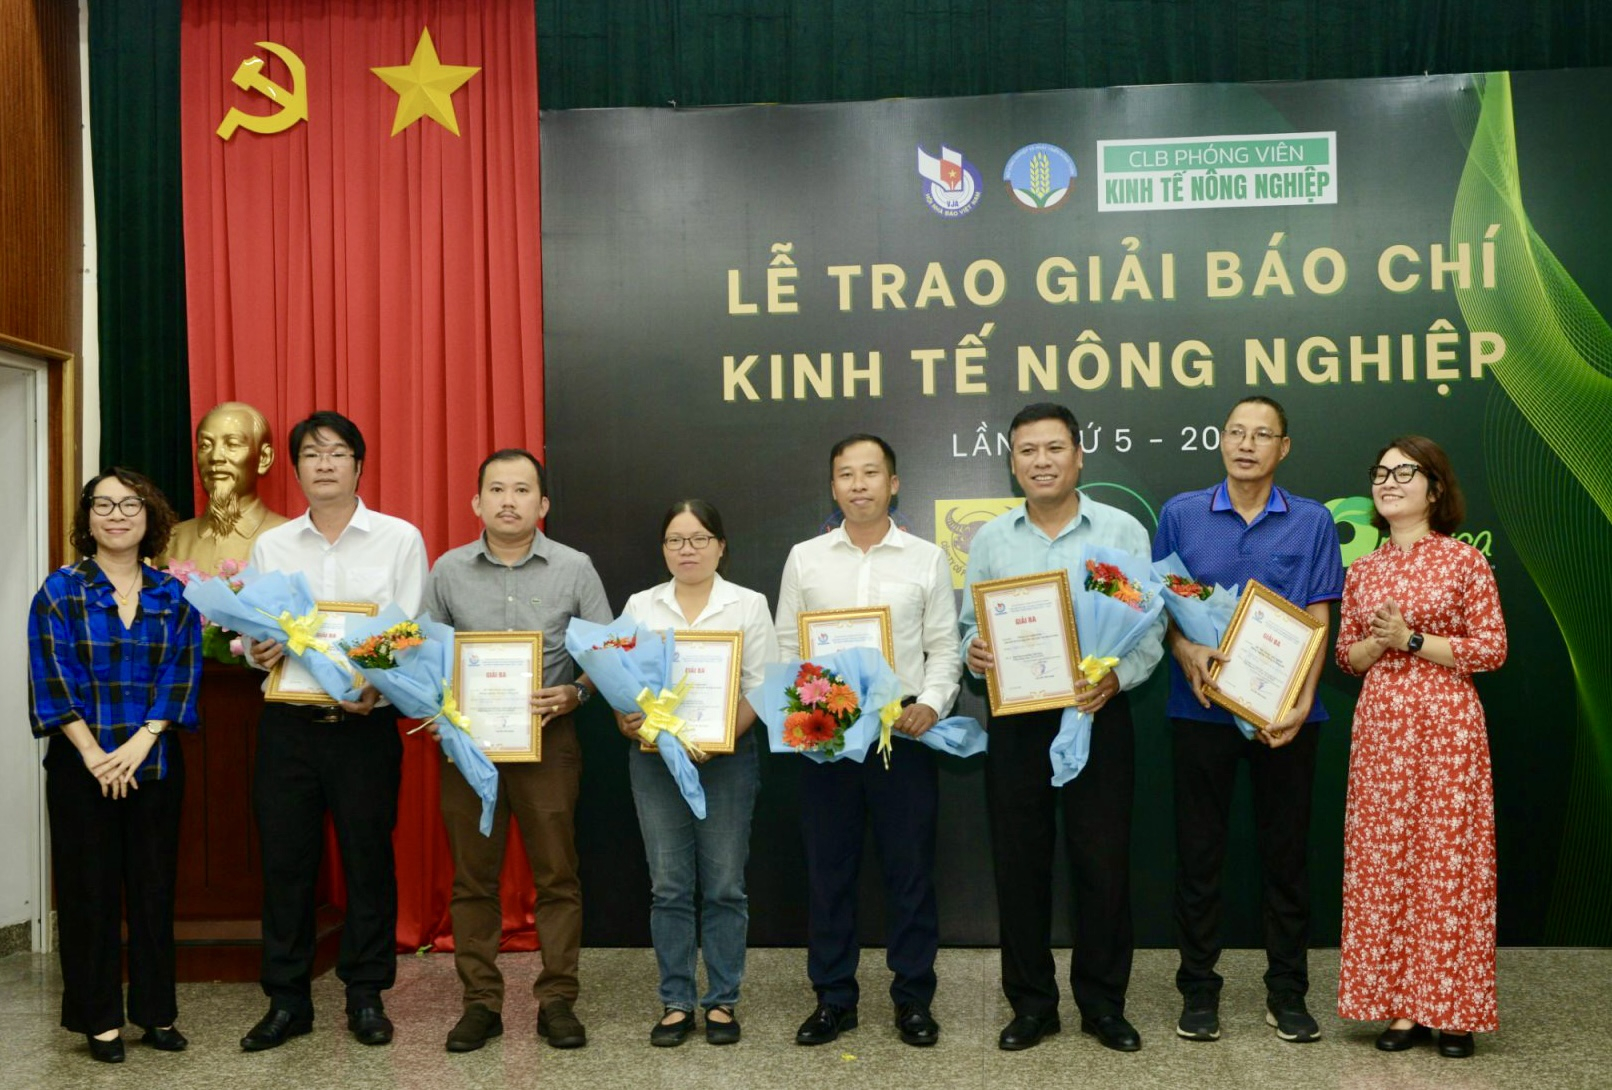 Nhà báo An Liên Phương, Chủ nhiệm Câu lạc bộ Phóng viên Kinh tế nông nghiệp và bà Phạm Phương Thảo, CEO Organica trao giải Ba cho các nhà báo. 